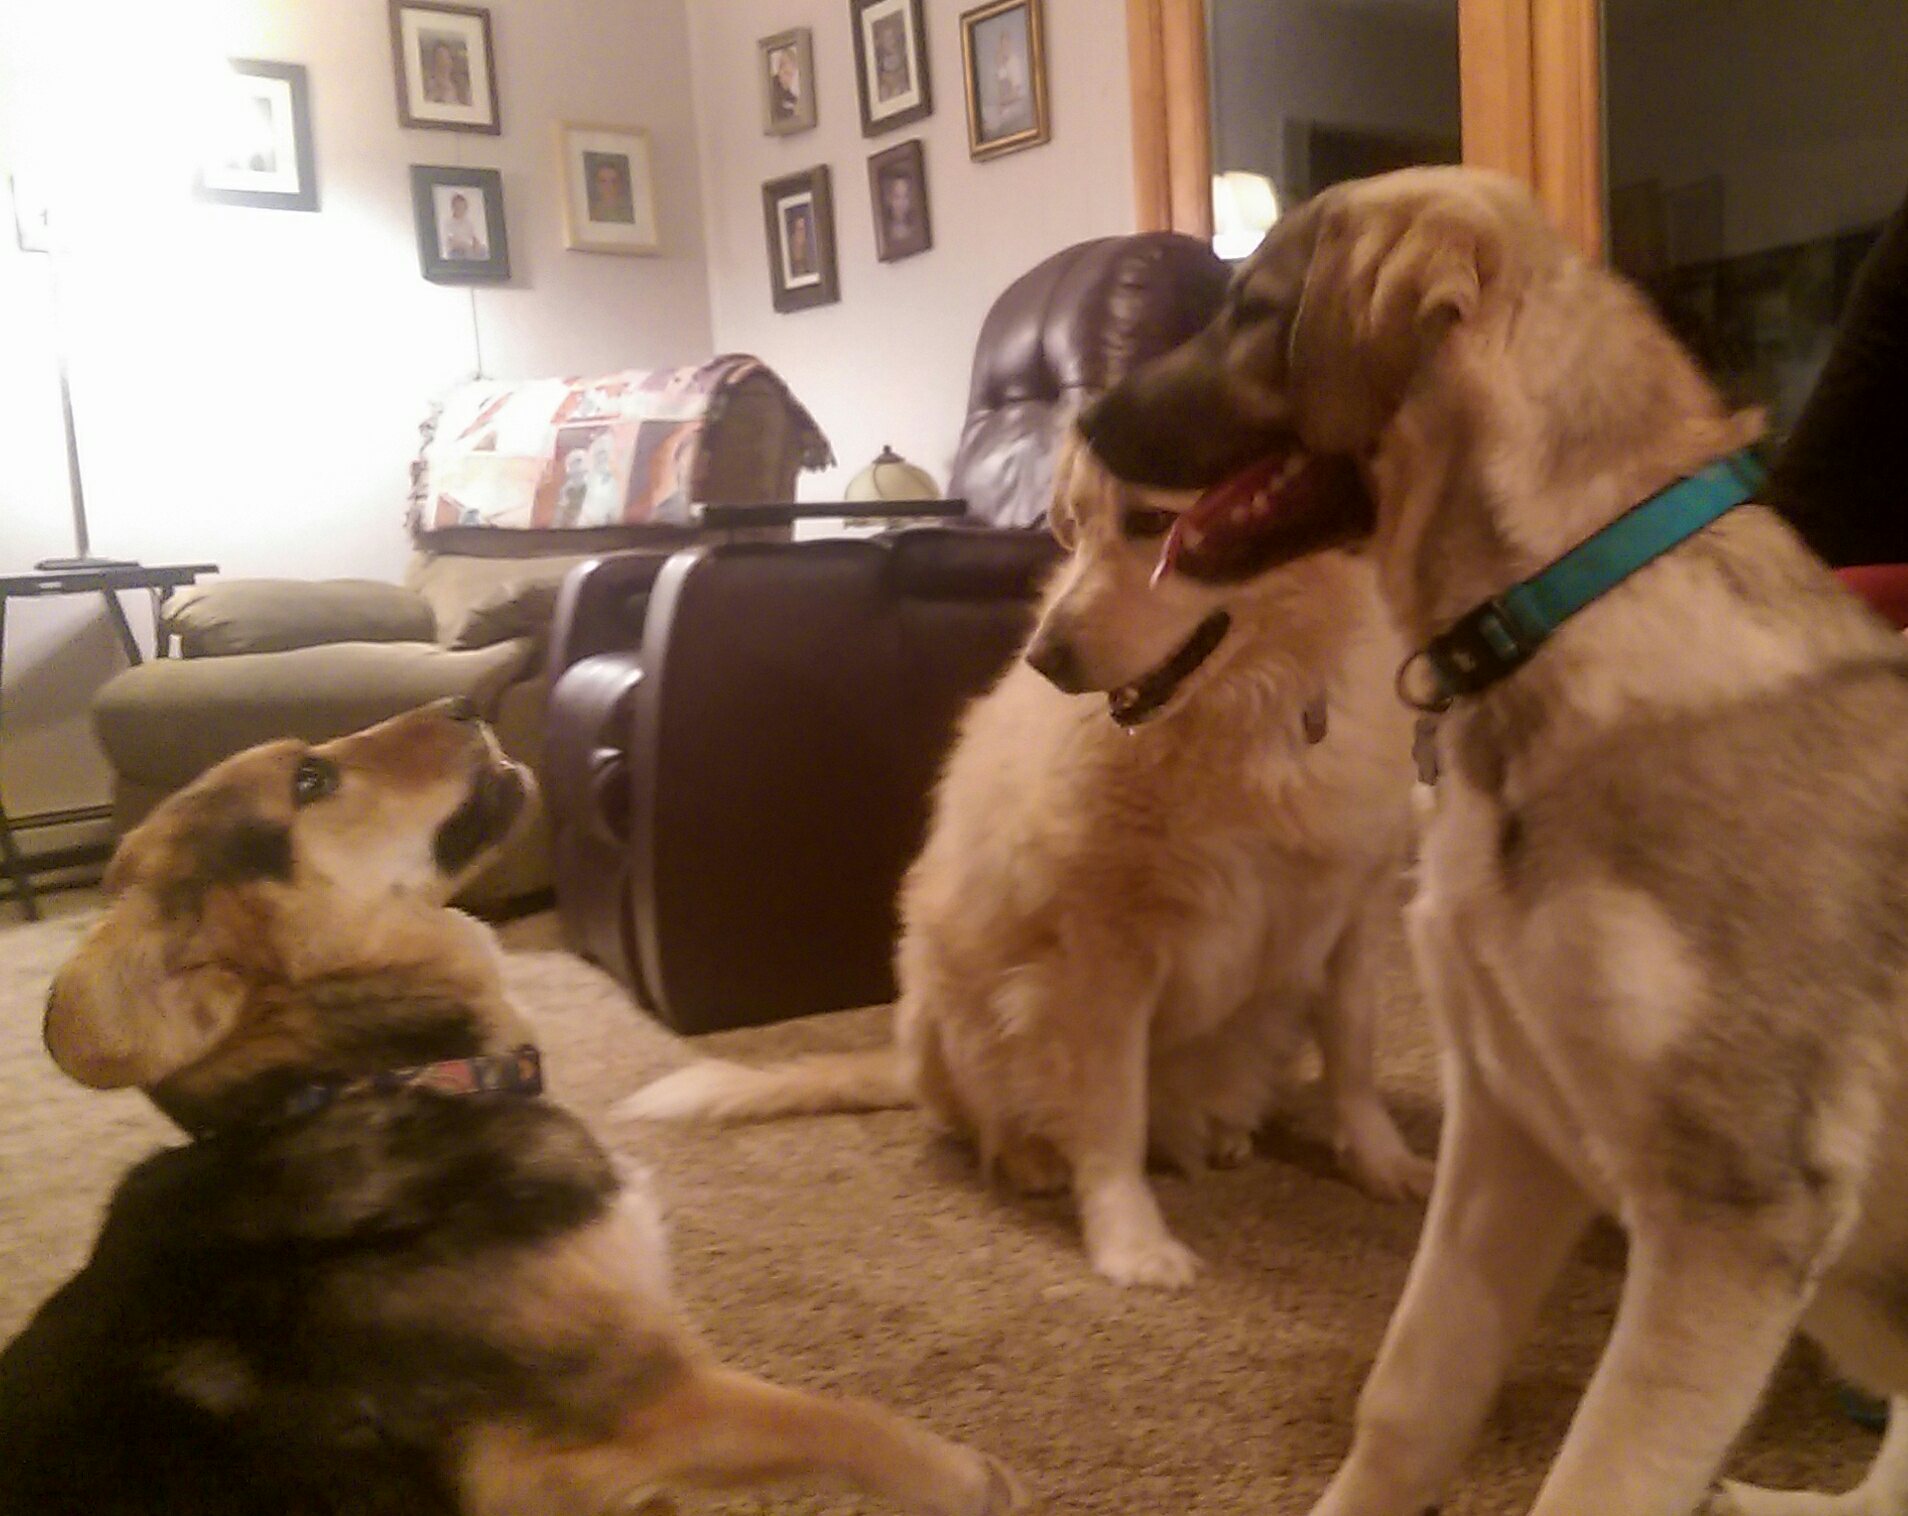 3 dogs meet